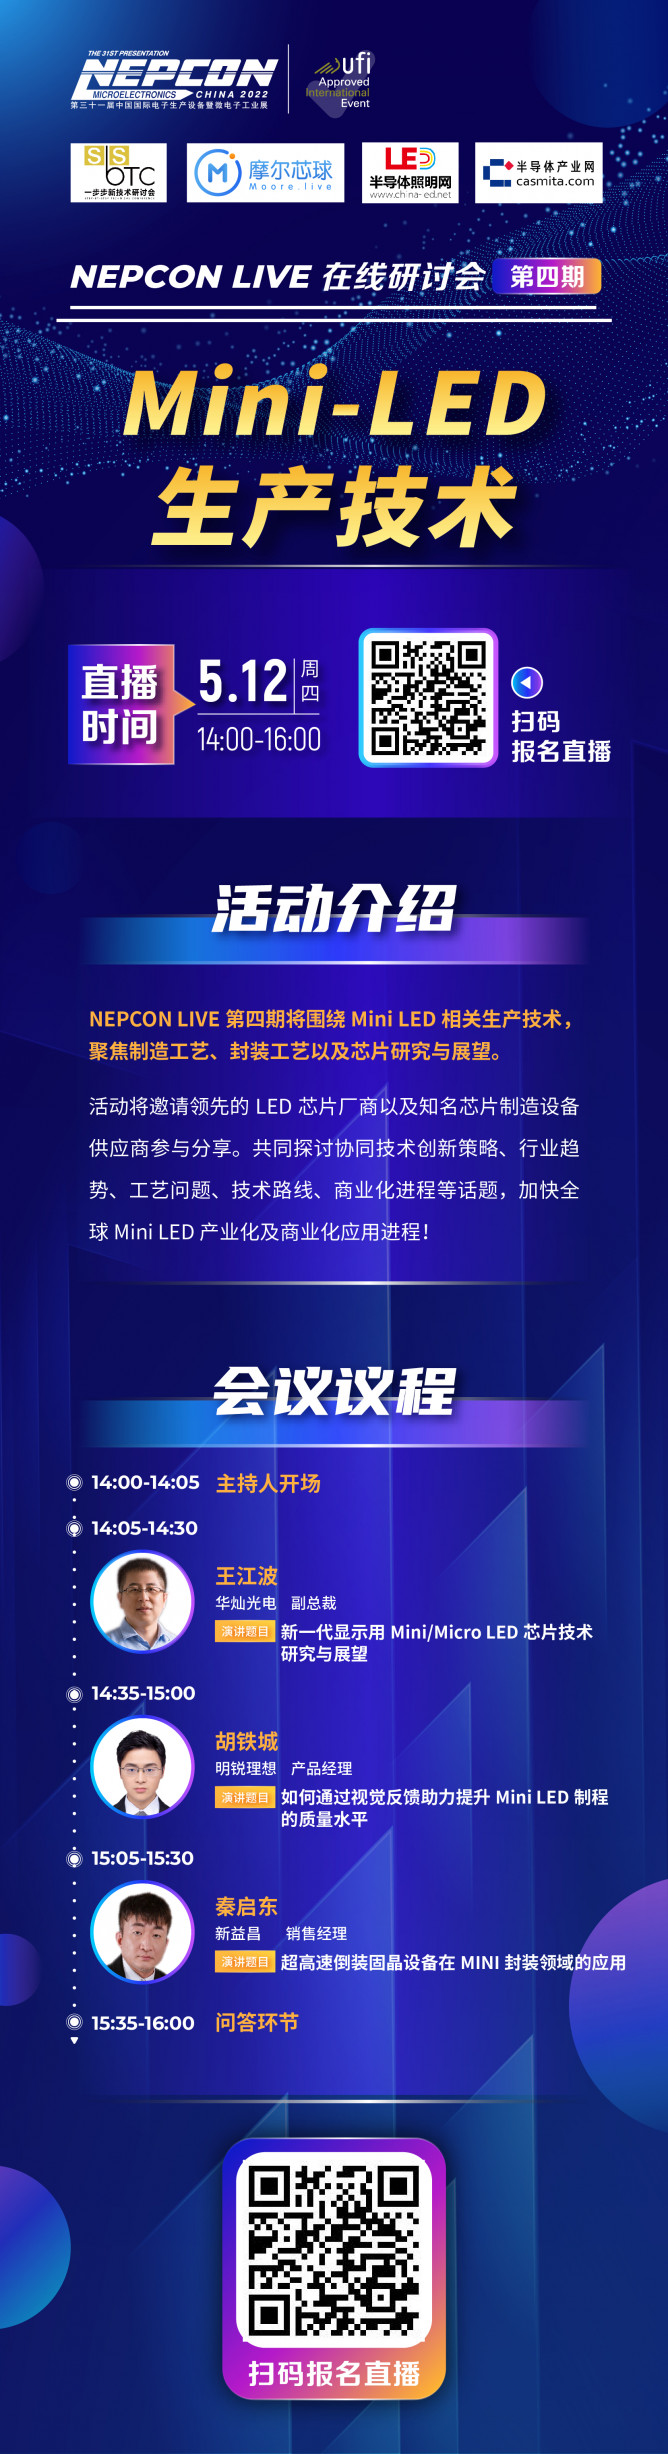 直播预告| 华灿、新益昌、明锐理想参与，MiniLED 生产技术线上研讨会将于5月